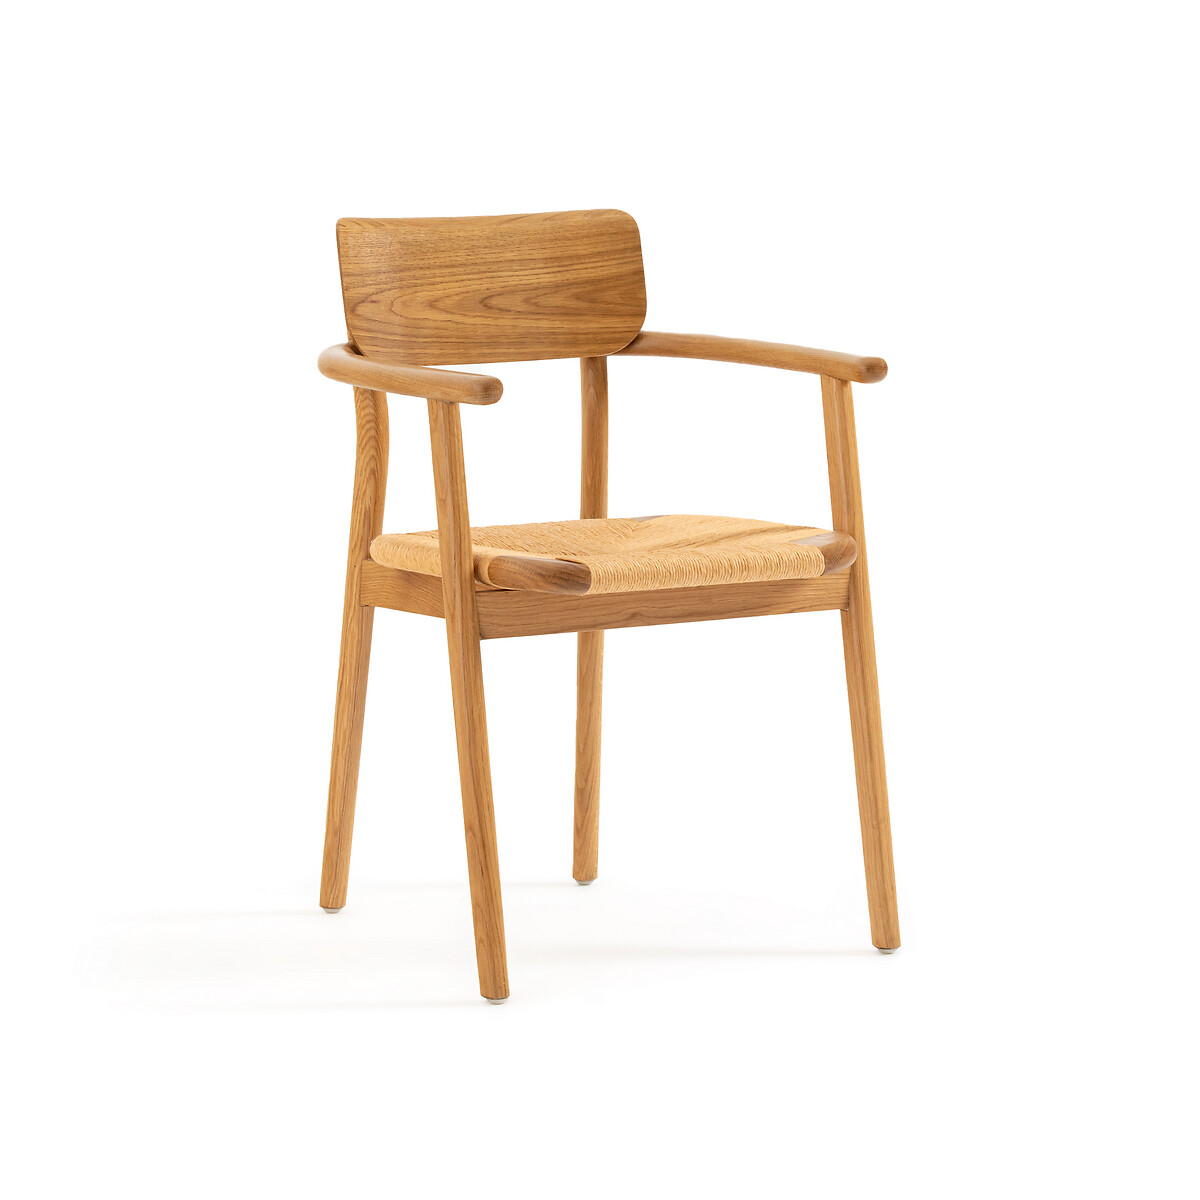 Кресло Для столовой из массива дуба и плетеного материала Pipo единый размер каштановый